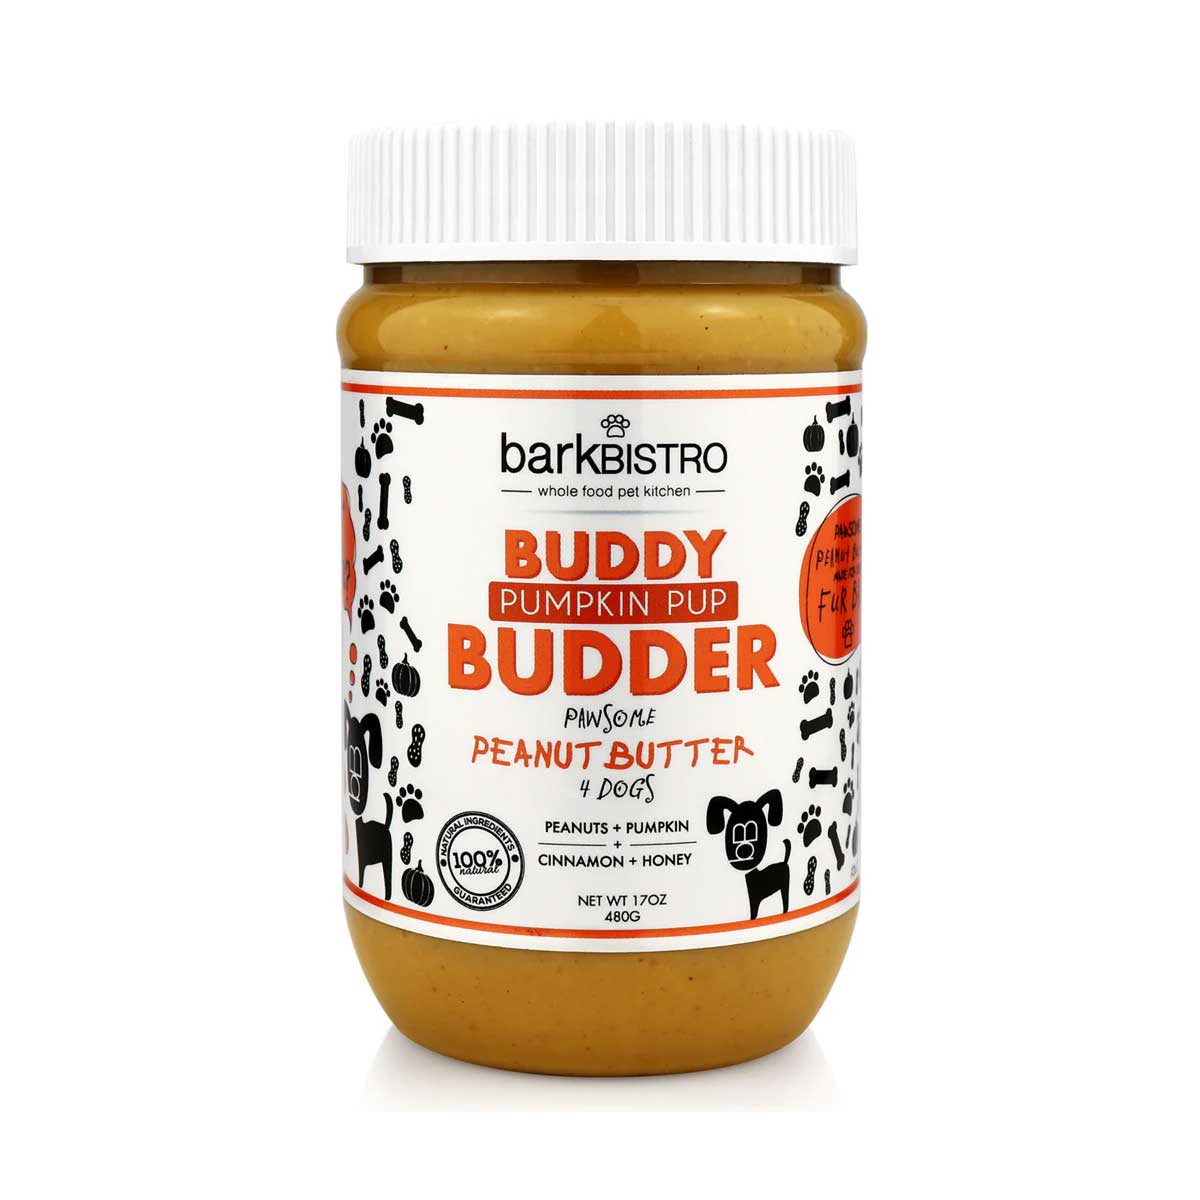 Pumpkin Pup Buddy Budder